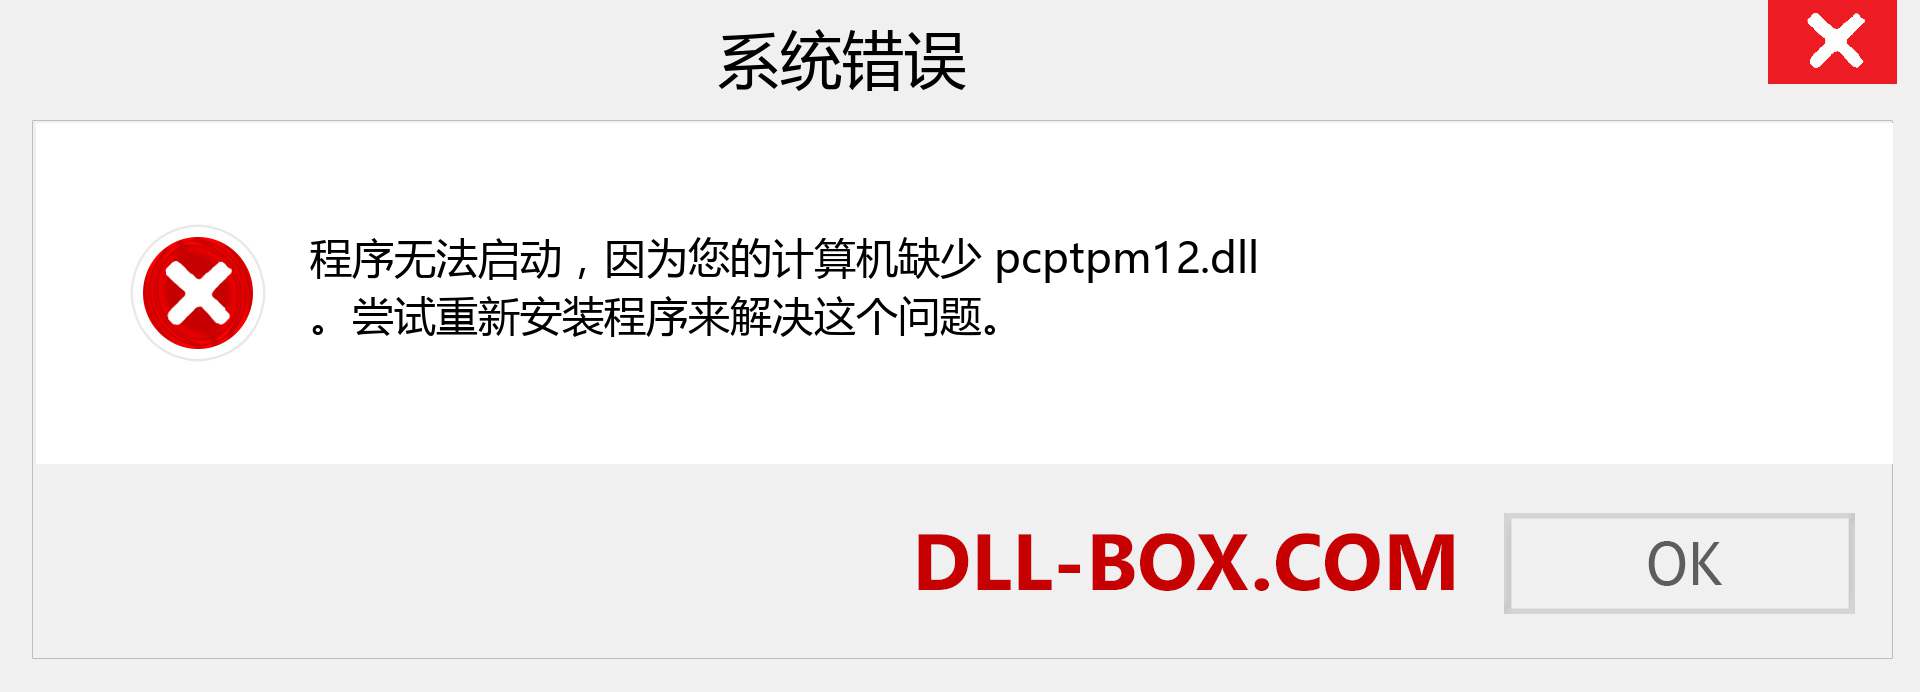 pcptpm12.dll 文件丢失？。 适用于 Windows 7、8、10 的下载 - 修复 Windows、照片、图像上的 pcptpm12 dll 丢失错误